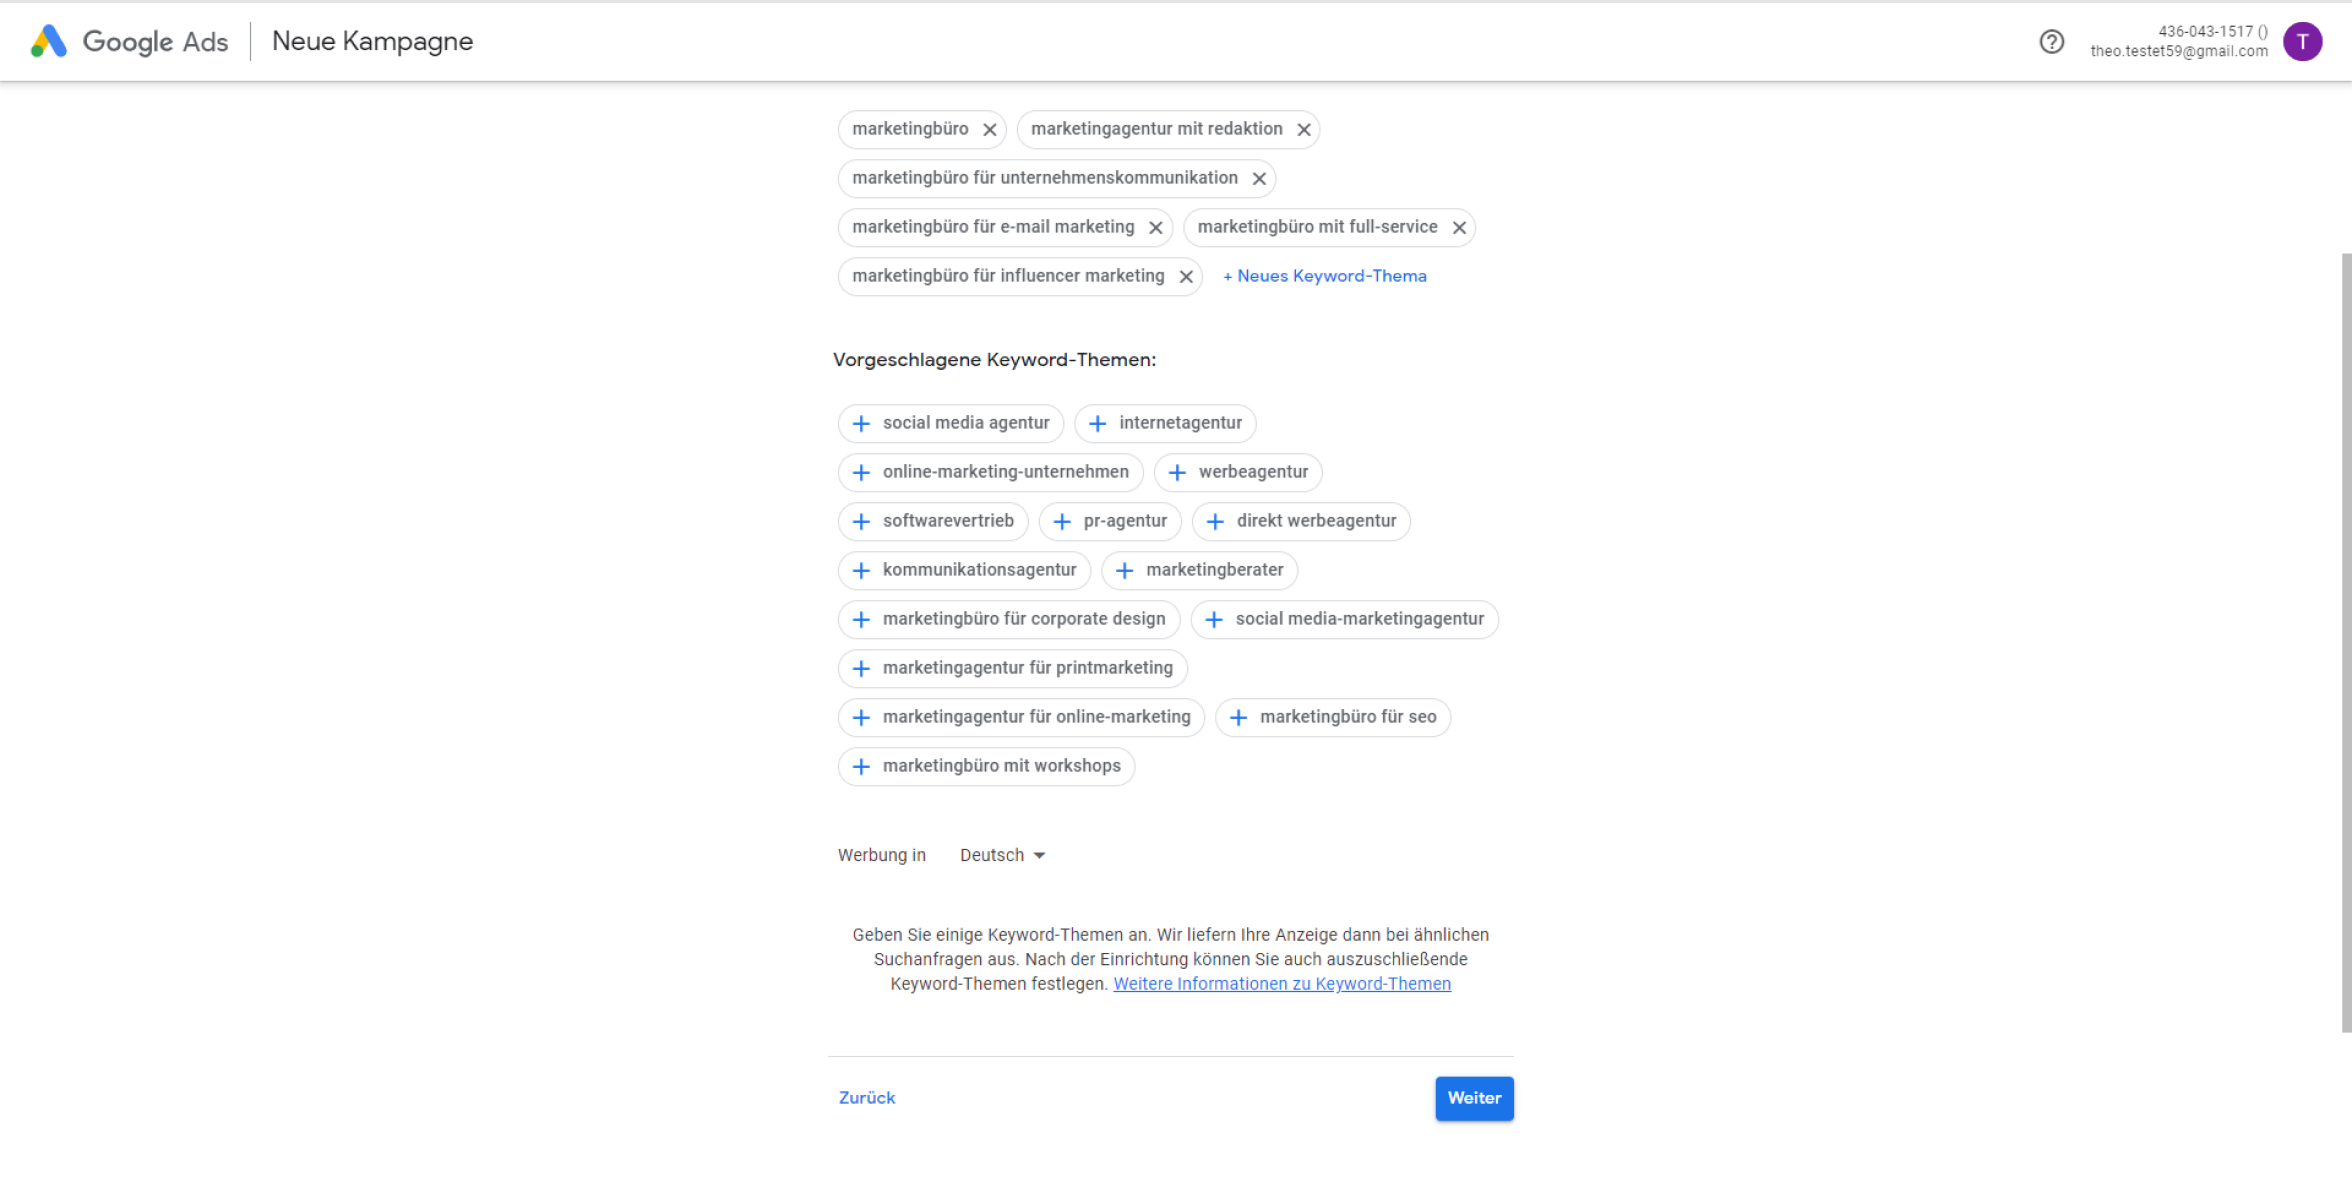 atrava - Google Ads Anleitung - Keywords eingeben